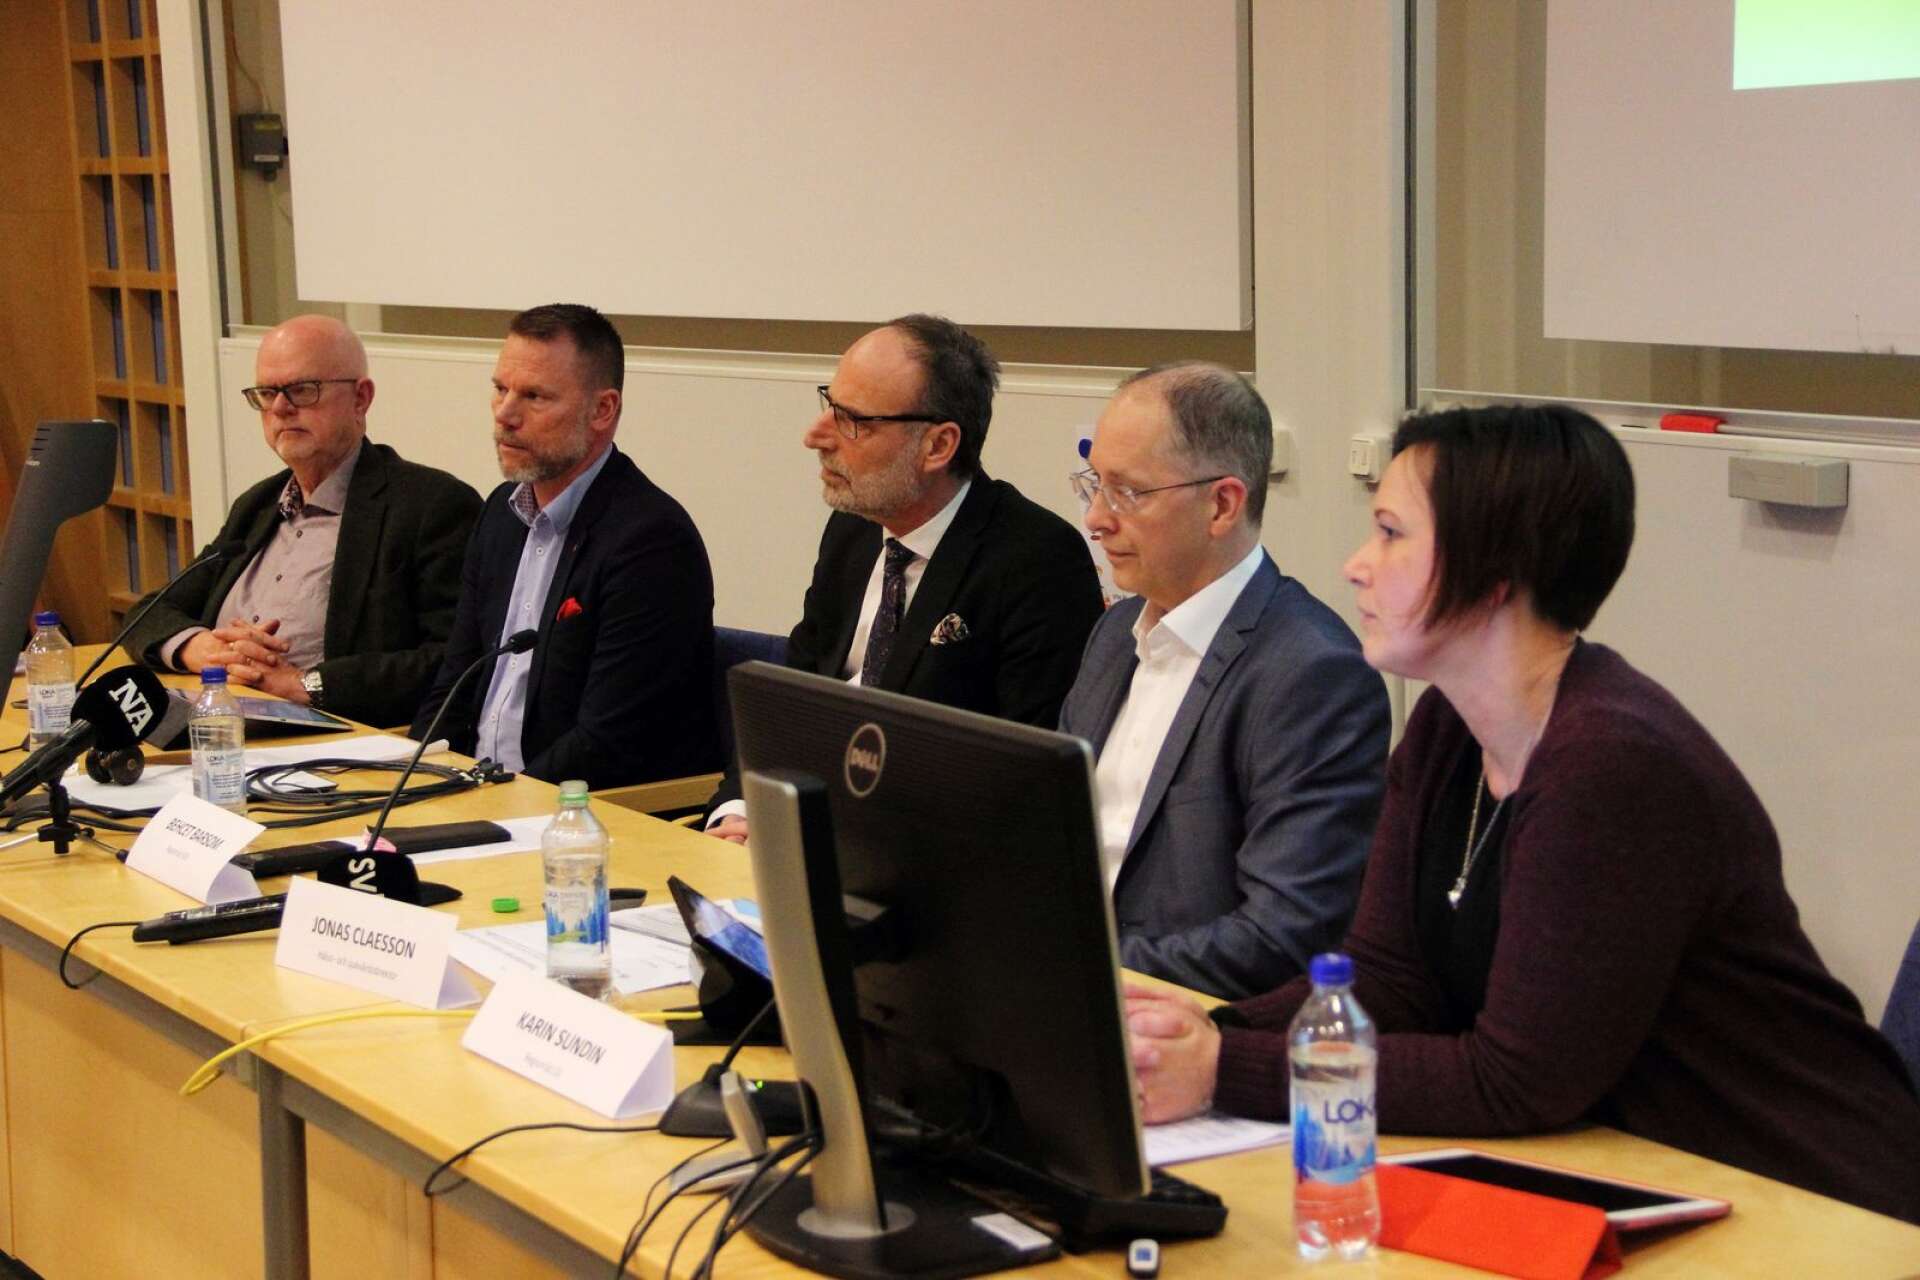 Jonas Claesson, hälso- och sjukvårdsdirektör, (tvåa från höger i bild) presenterar vad han kommit fram till i utredningen kring BB på Karlskoga lasarett och den politiska majoriteten backar upp, från v: Torbjörn Ahlin (C), Andreas Svahn (S), Bechet Barsom (KD) och Karin Sundin (S)